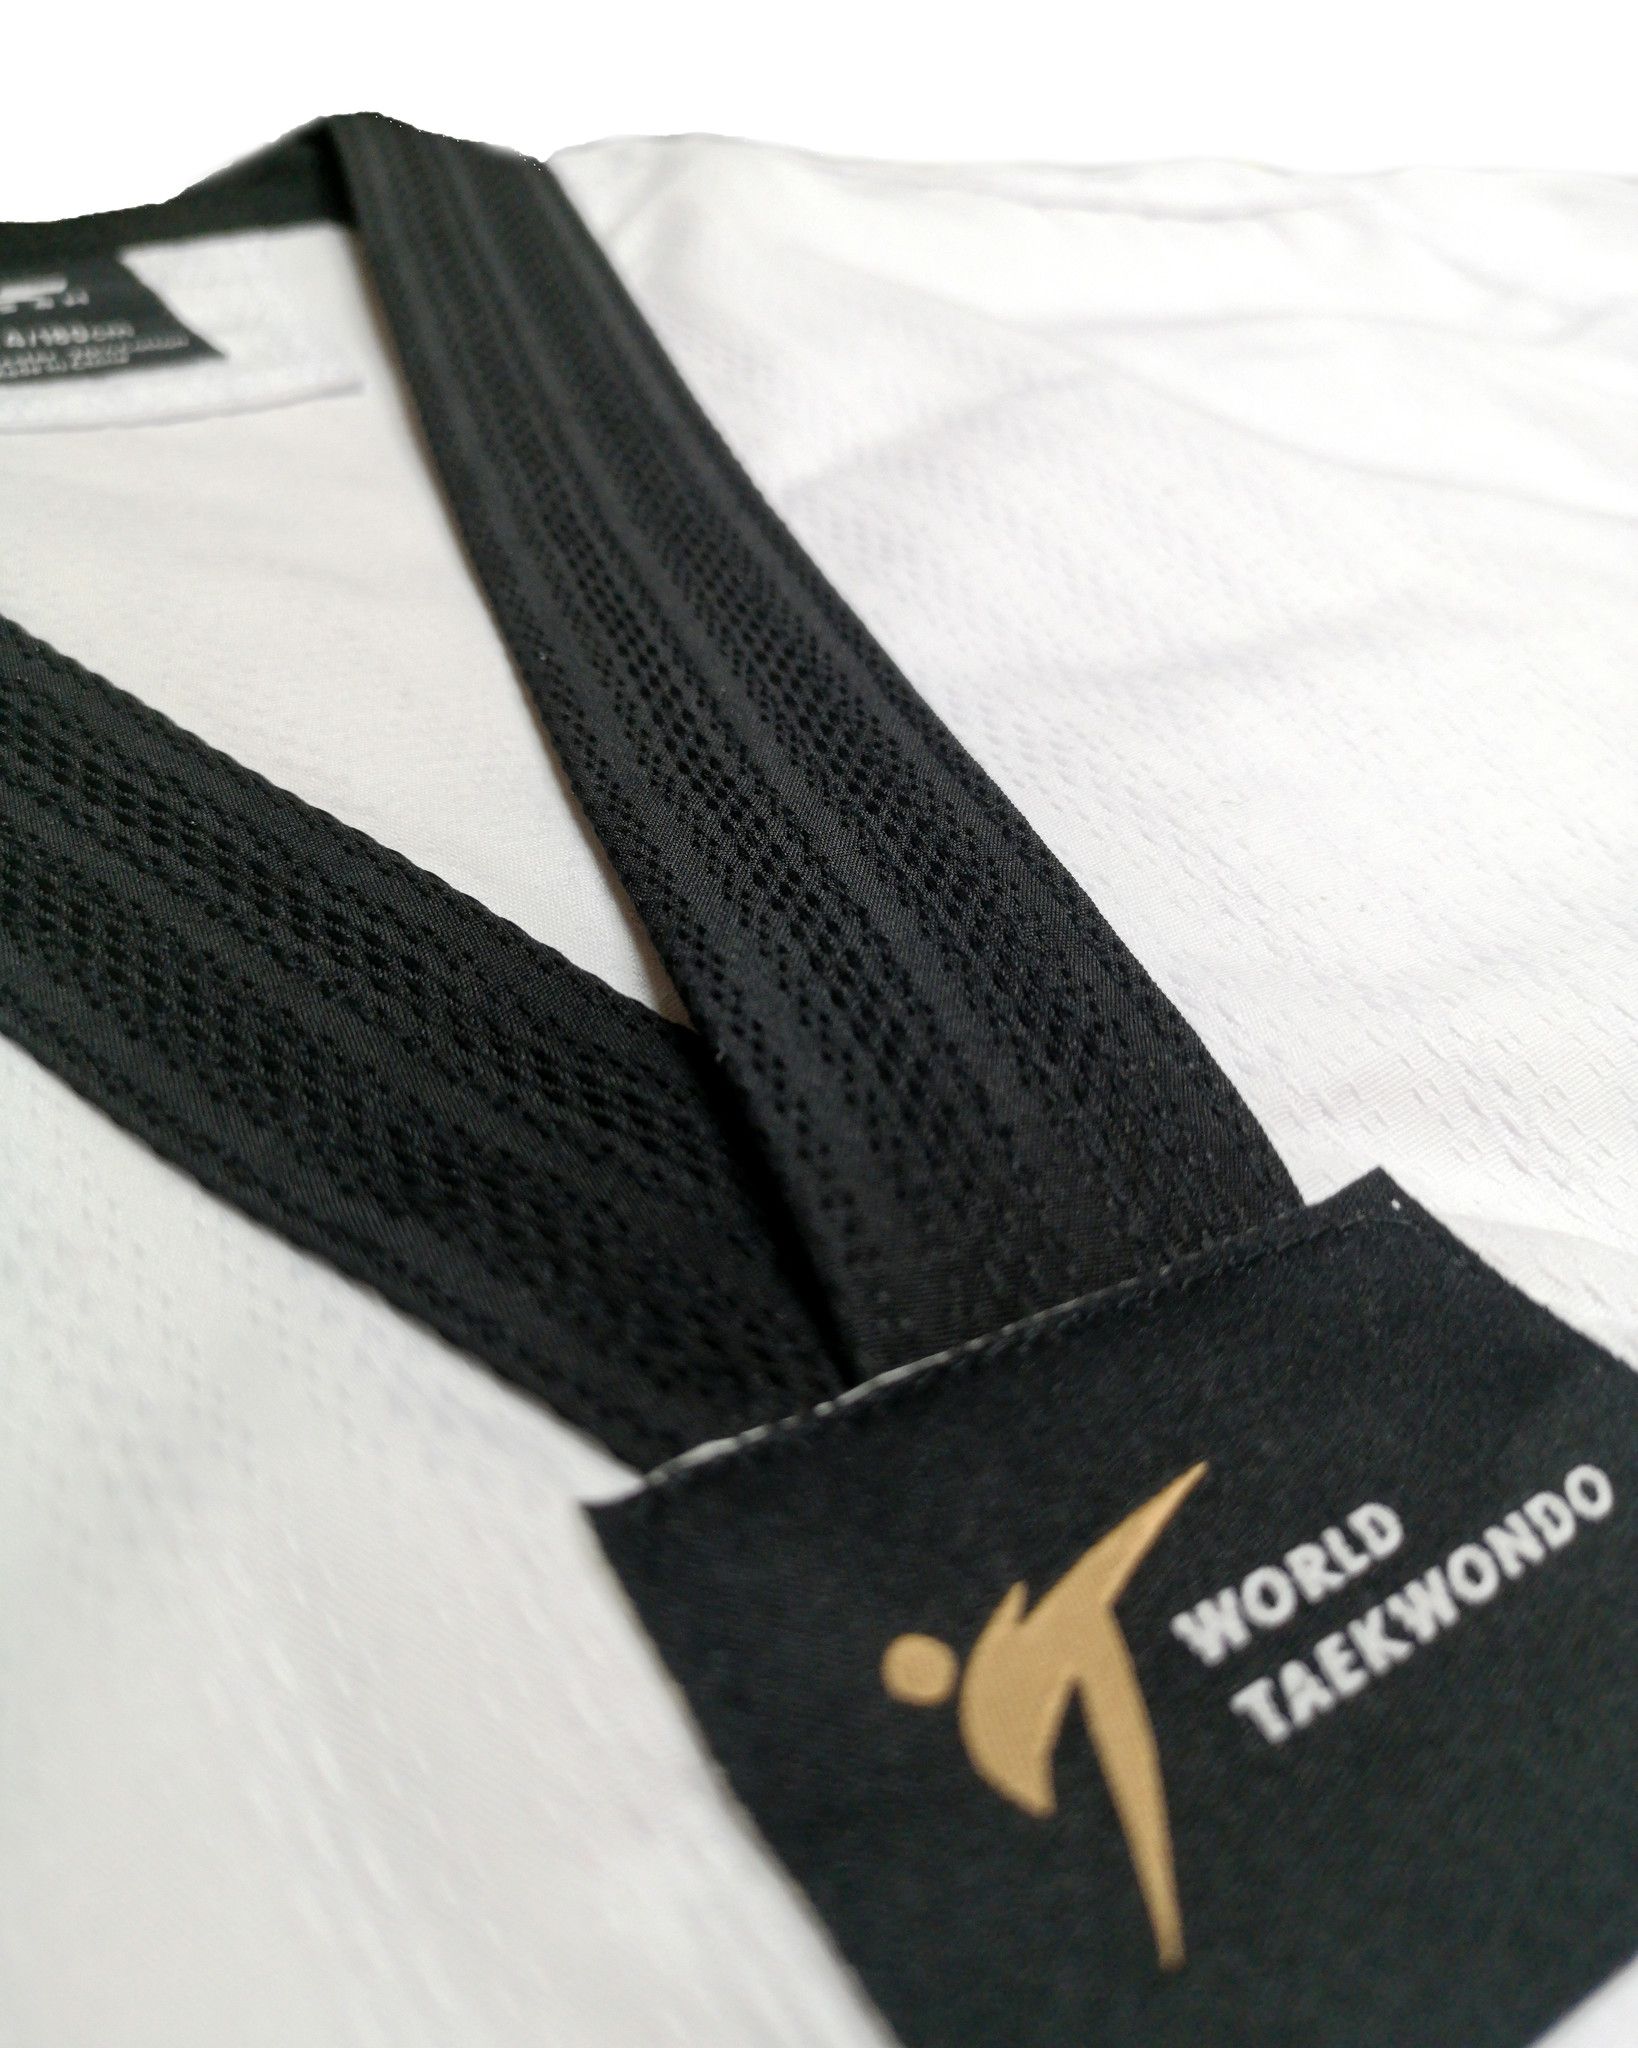 Dobok per Taekwondo Tusah Elite Uniform collo Nero Omologato WT WTF per competizioni ed allenamenti